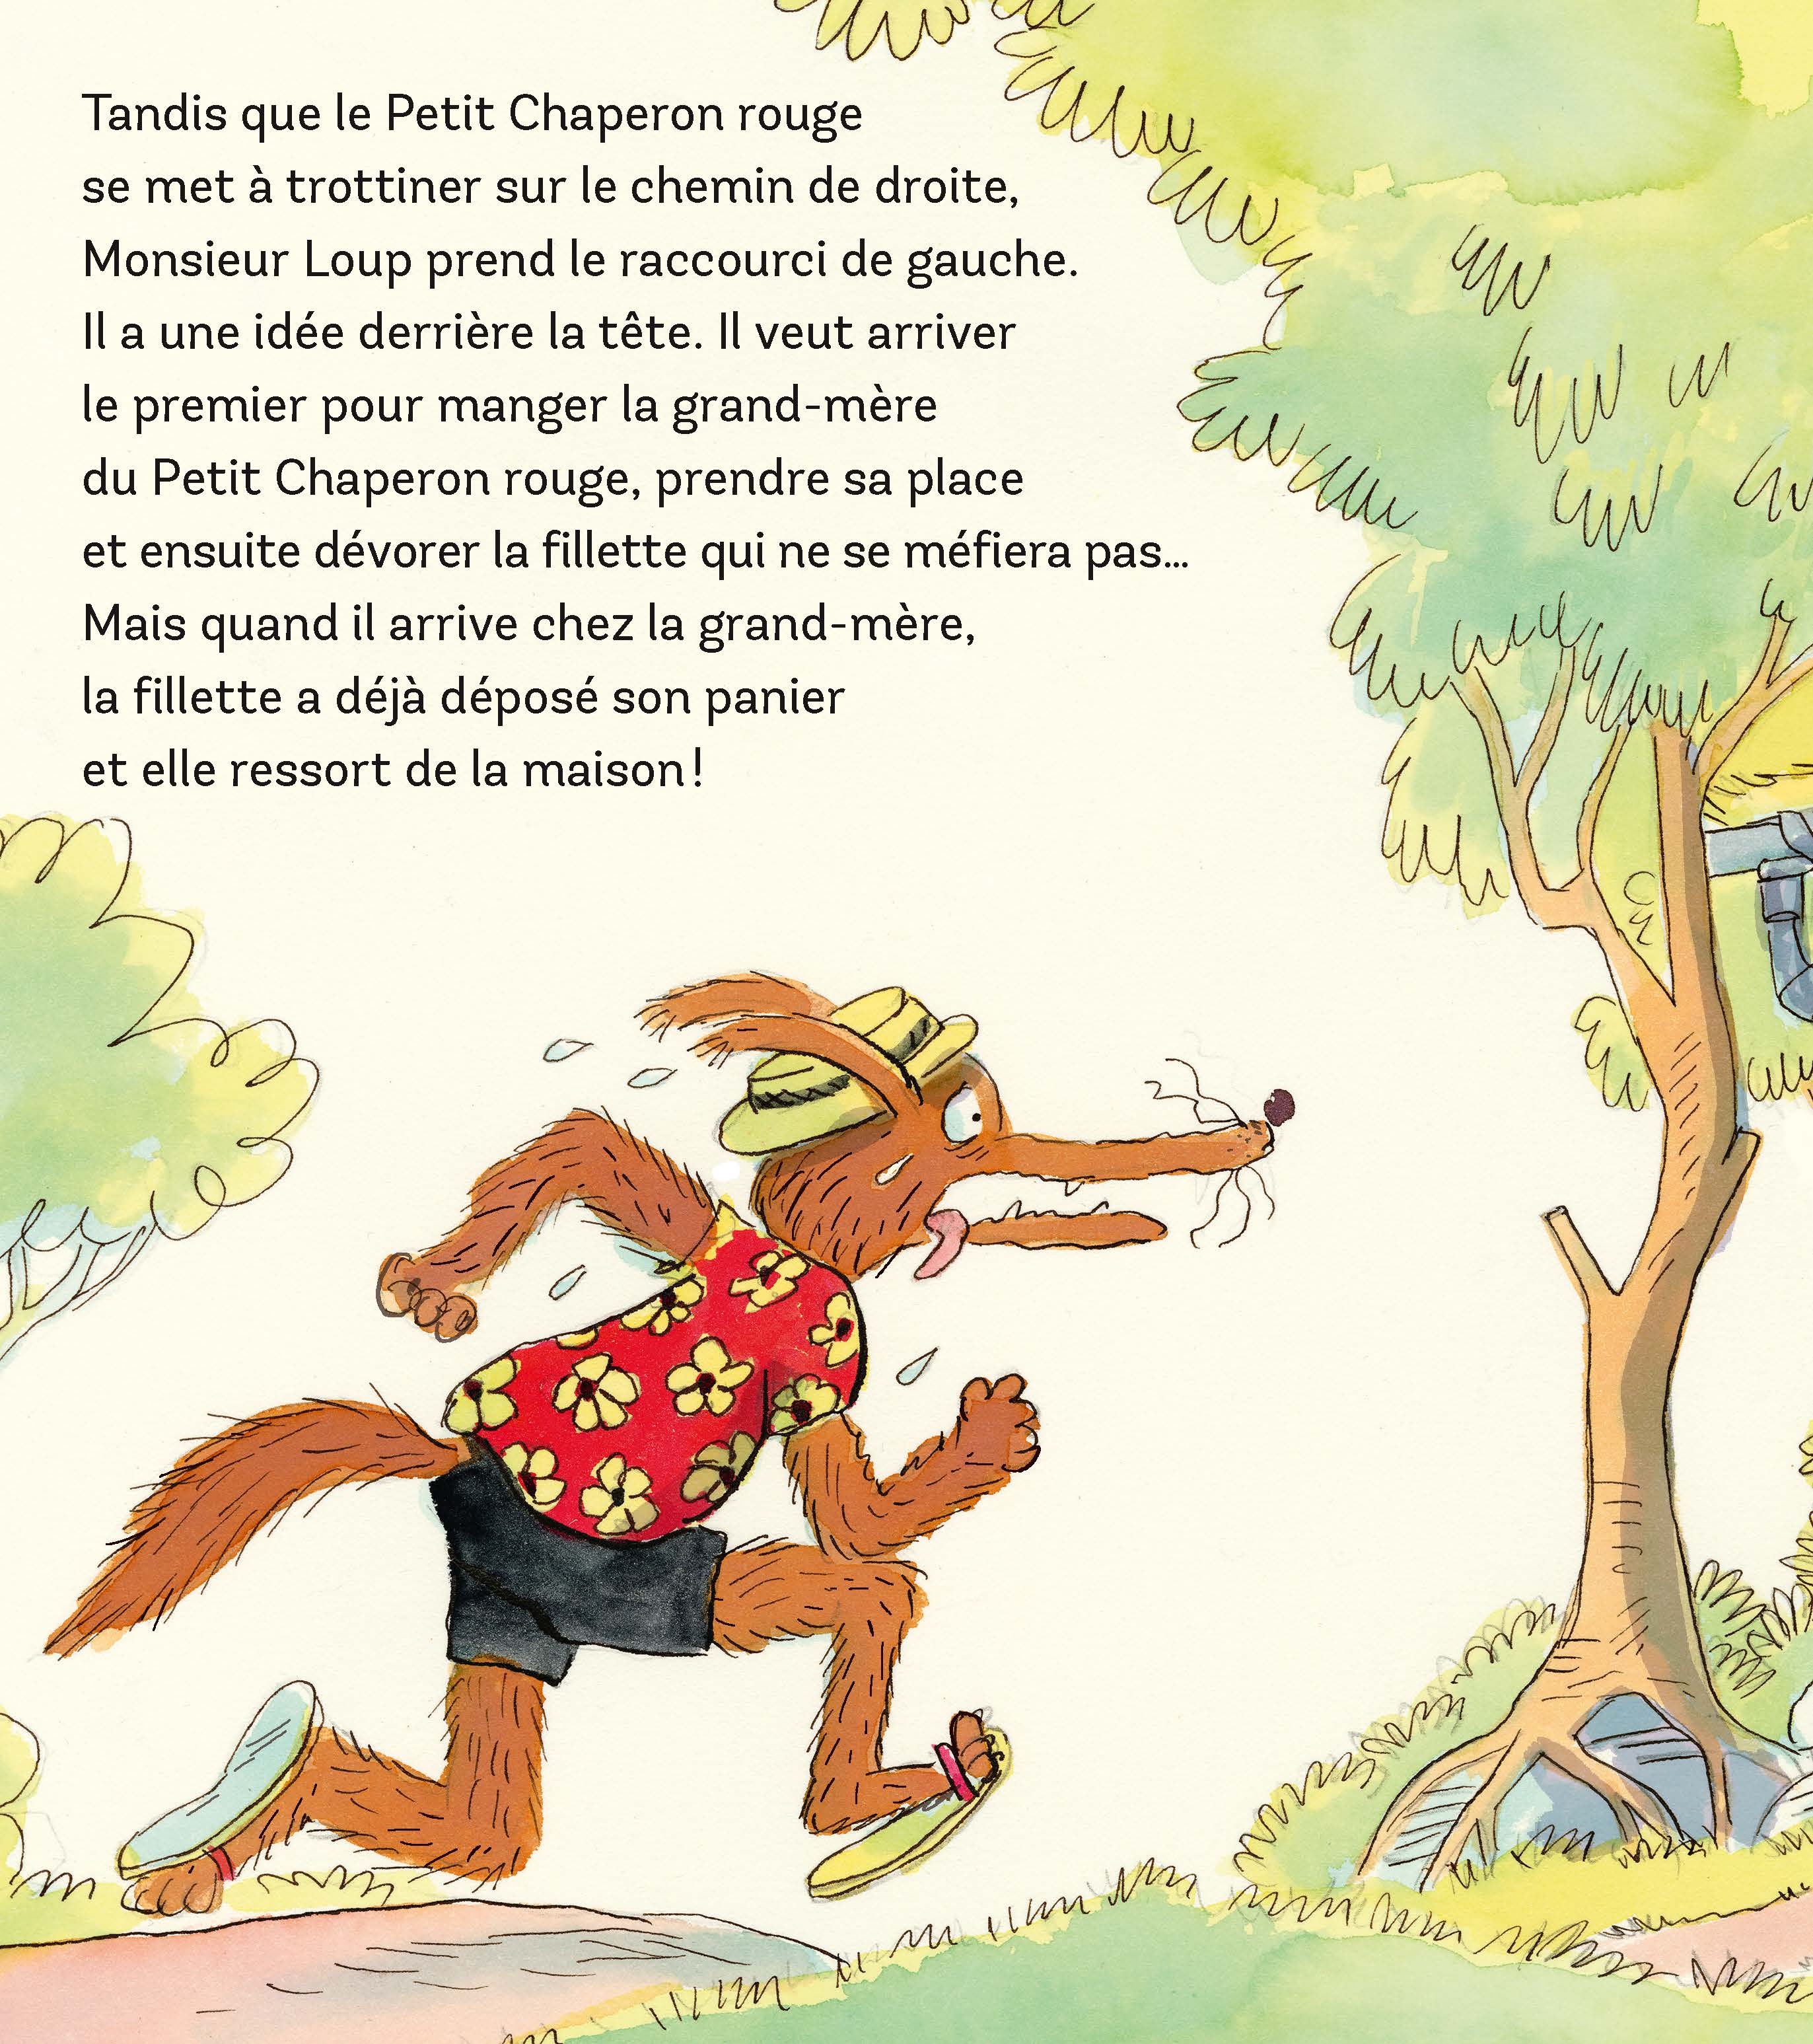 Monsieur Loup se met au sport Livre audio, Valérie Cros, Grégoire Mabire -  Illustrateur